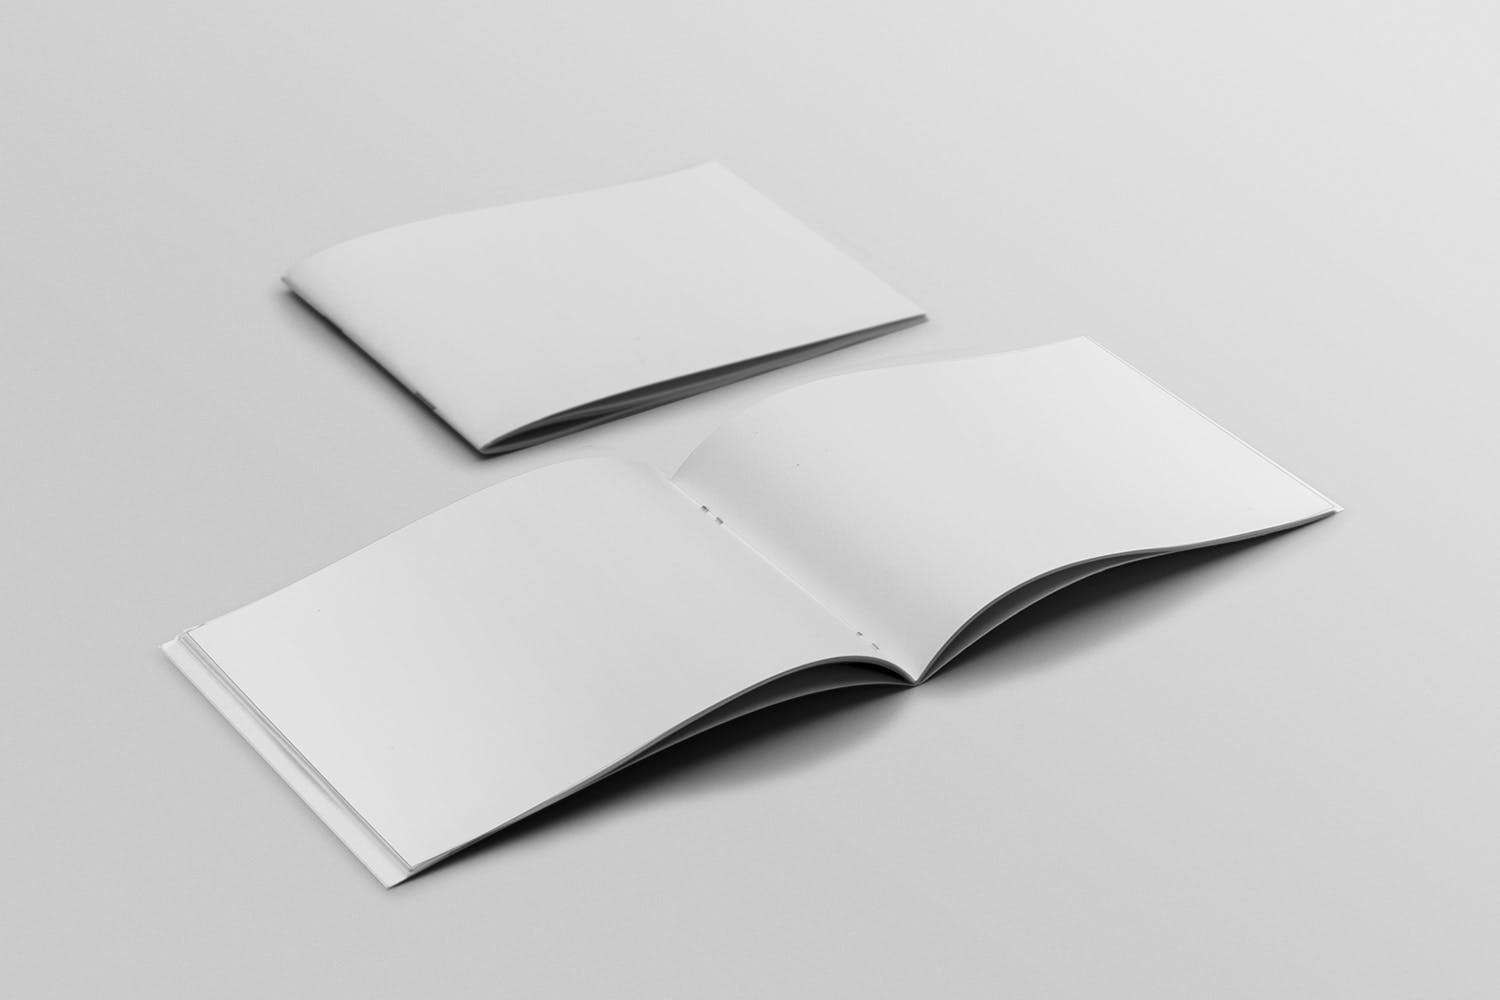 宣传画册/企业画册封面&内页版式设计45度角效果图样机素材库精选 Cover & Open Landscape Brochure Mockup插图(1)